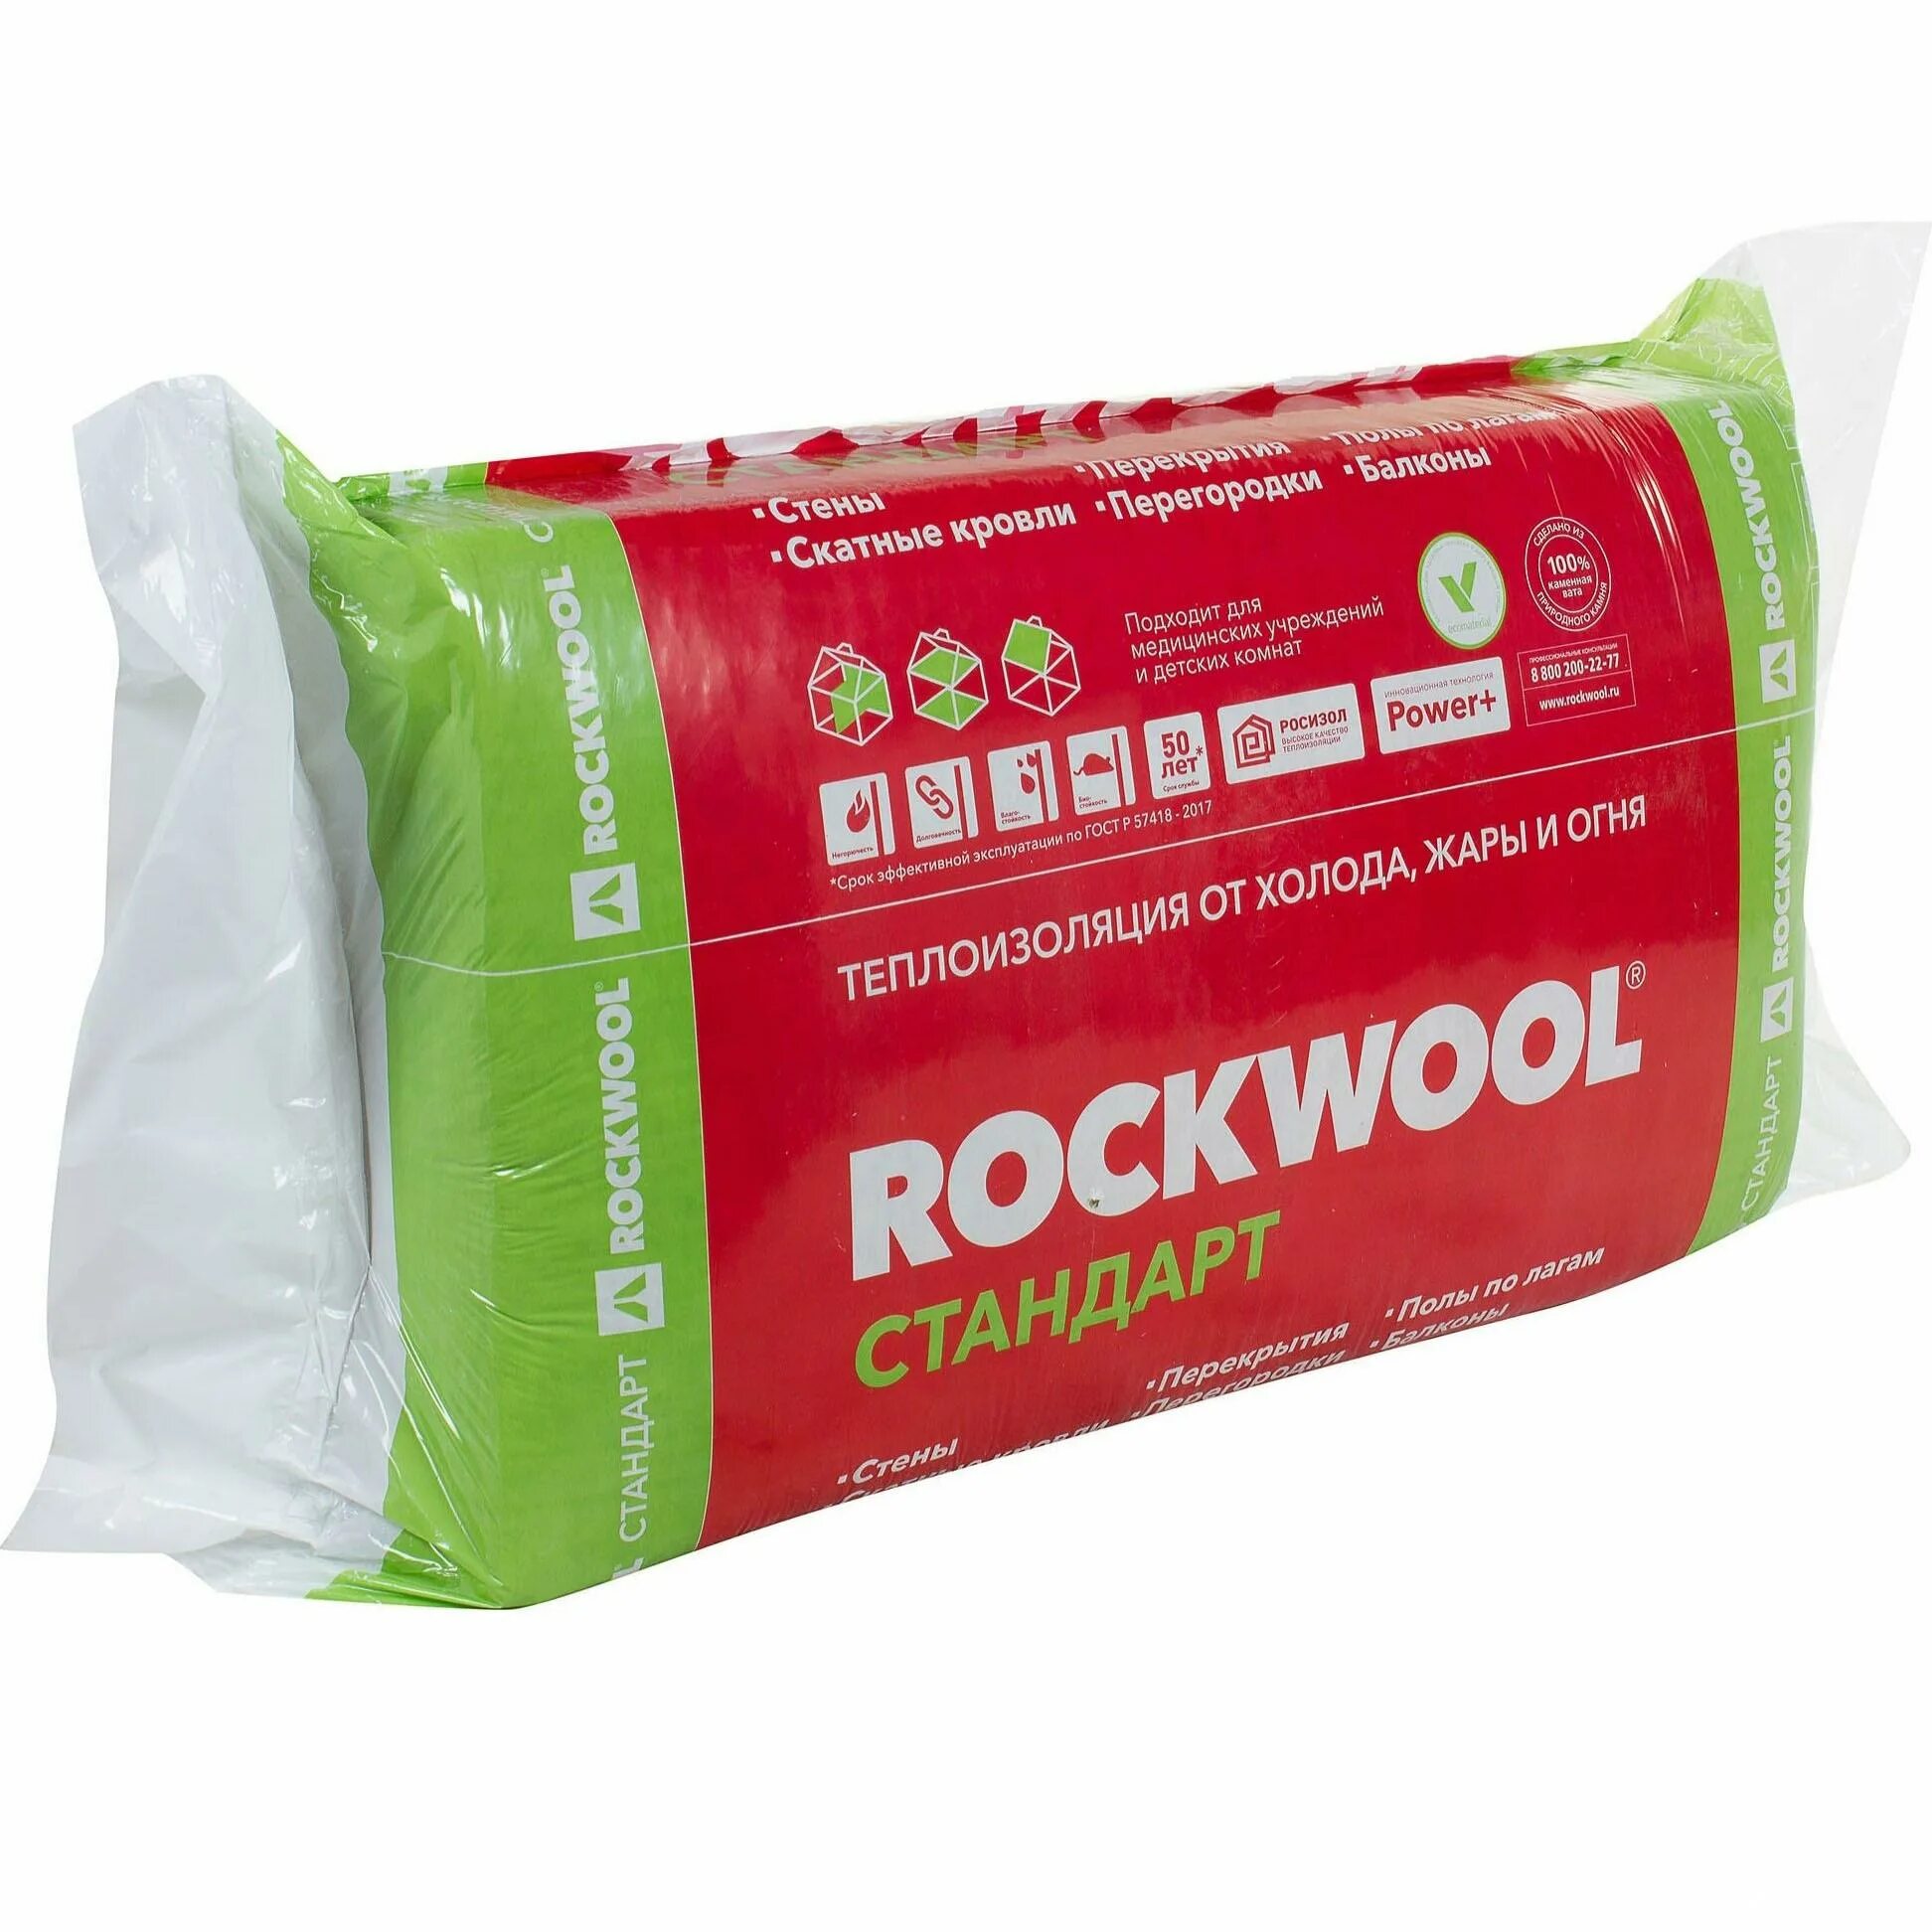 Минвата 50мм цена. Rockwool утеплитель стандарт 1000х600х100. Каменная вата Роквел 50 мм. Роквул стандарт 50 мм. Утеплитель Роквул стандарт 50 мм 5.4 м².